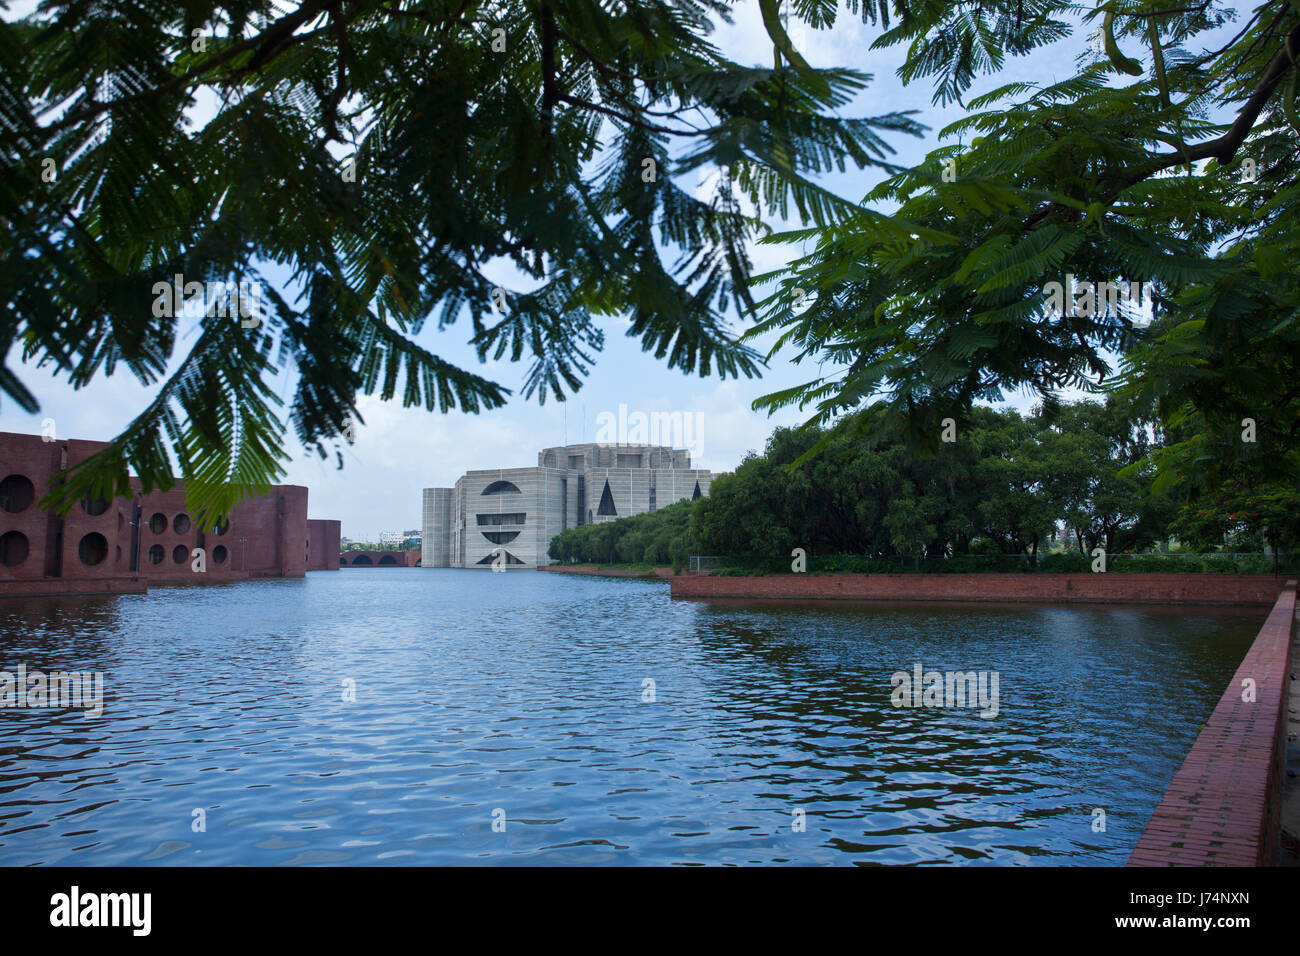 Le bâtiment de l'Assemblée nationale du Bangladesh Jatiyo Sangsad Bhaban ou est considéré comme l'un des plus beaux exemples de l'architecture moderne. Conçu Banque D'Images